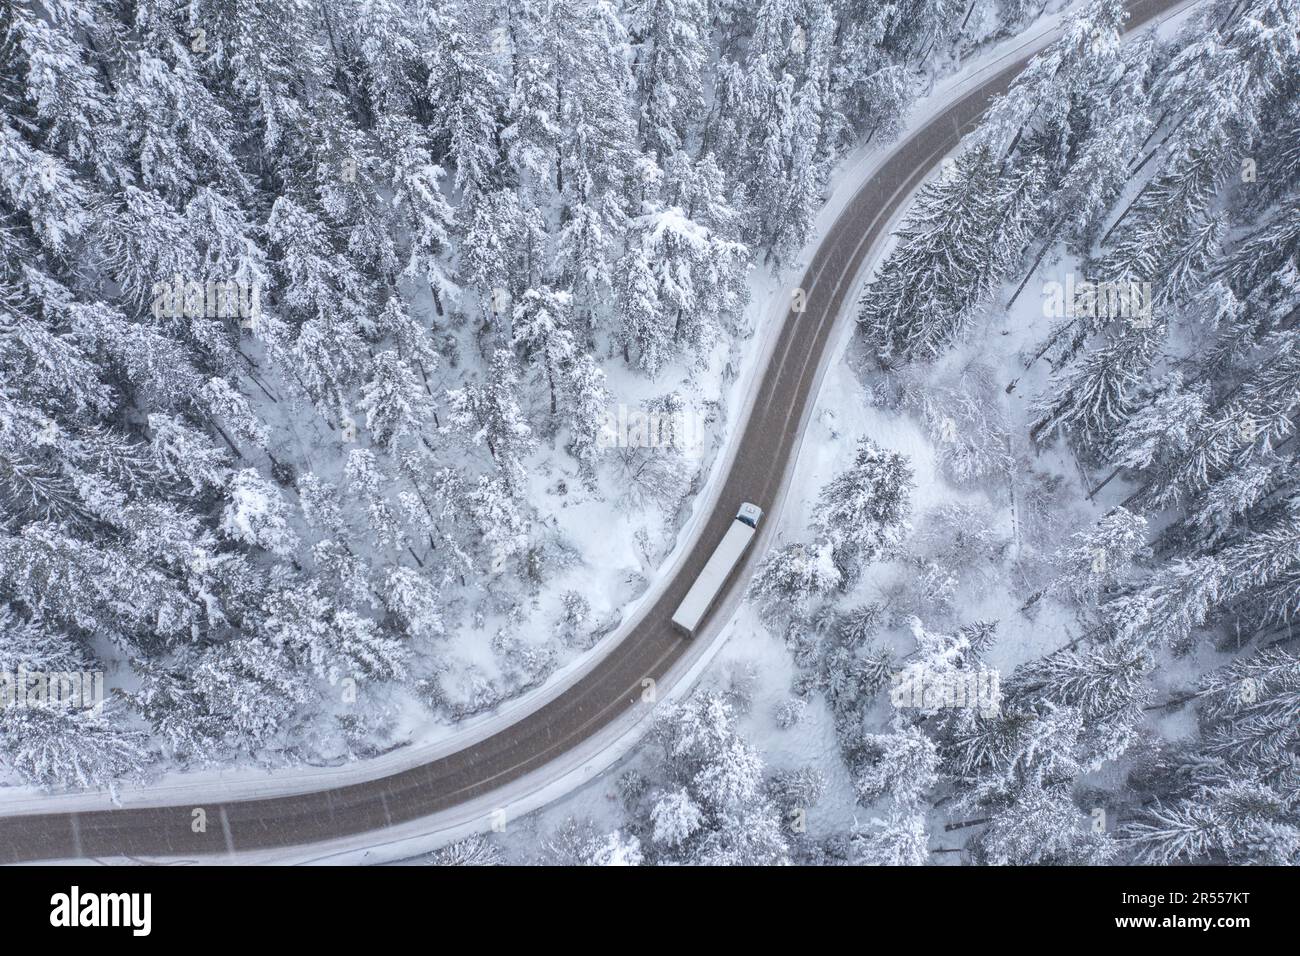 Camion, véhicule long, se déplaçant pendant la chute de neige sur la route sinueuse et sinueuse de montagne passant par une forêt de pins enneigés Banque D'Images